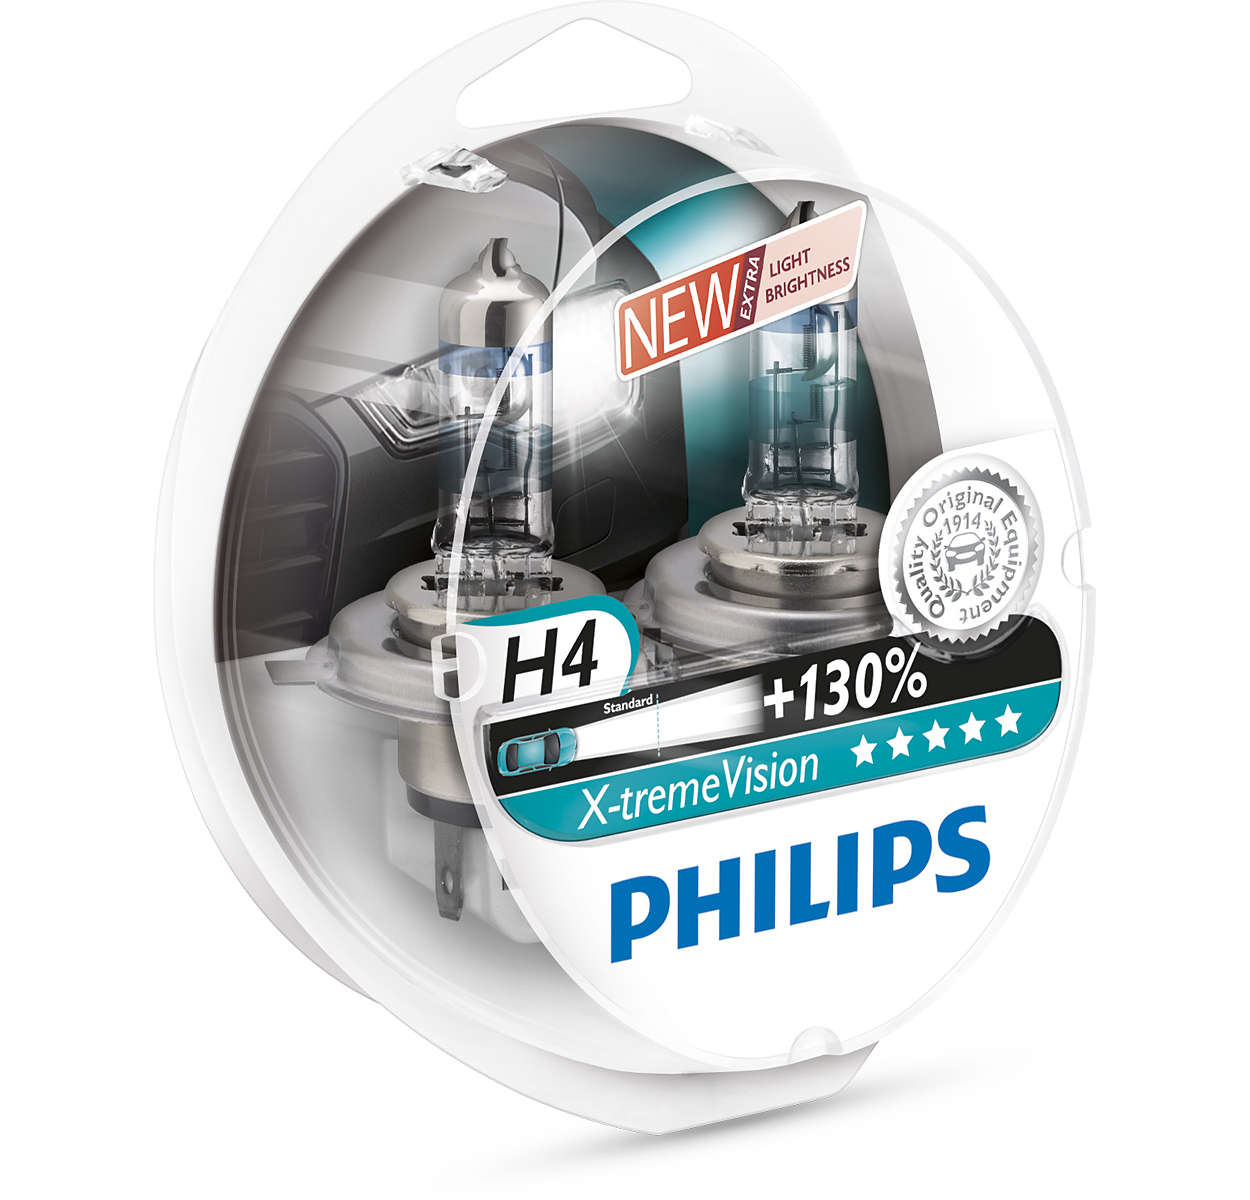 Philips H4 60/55W 12V Vision More light 12342PRC1 1 bulb